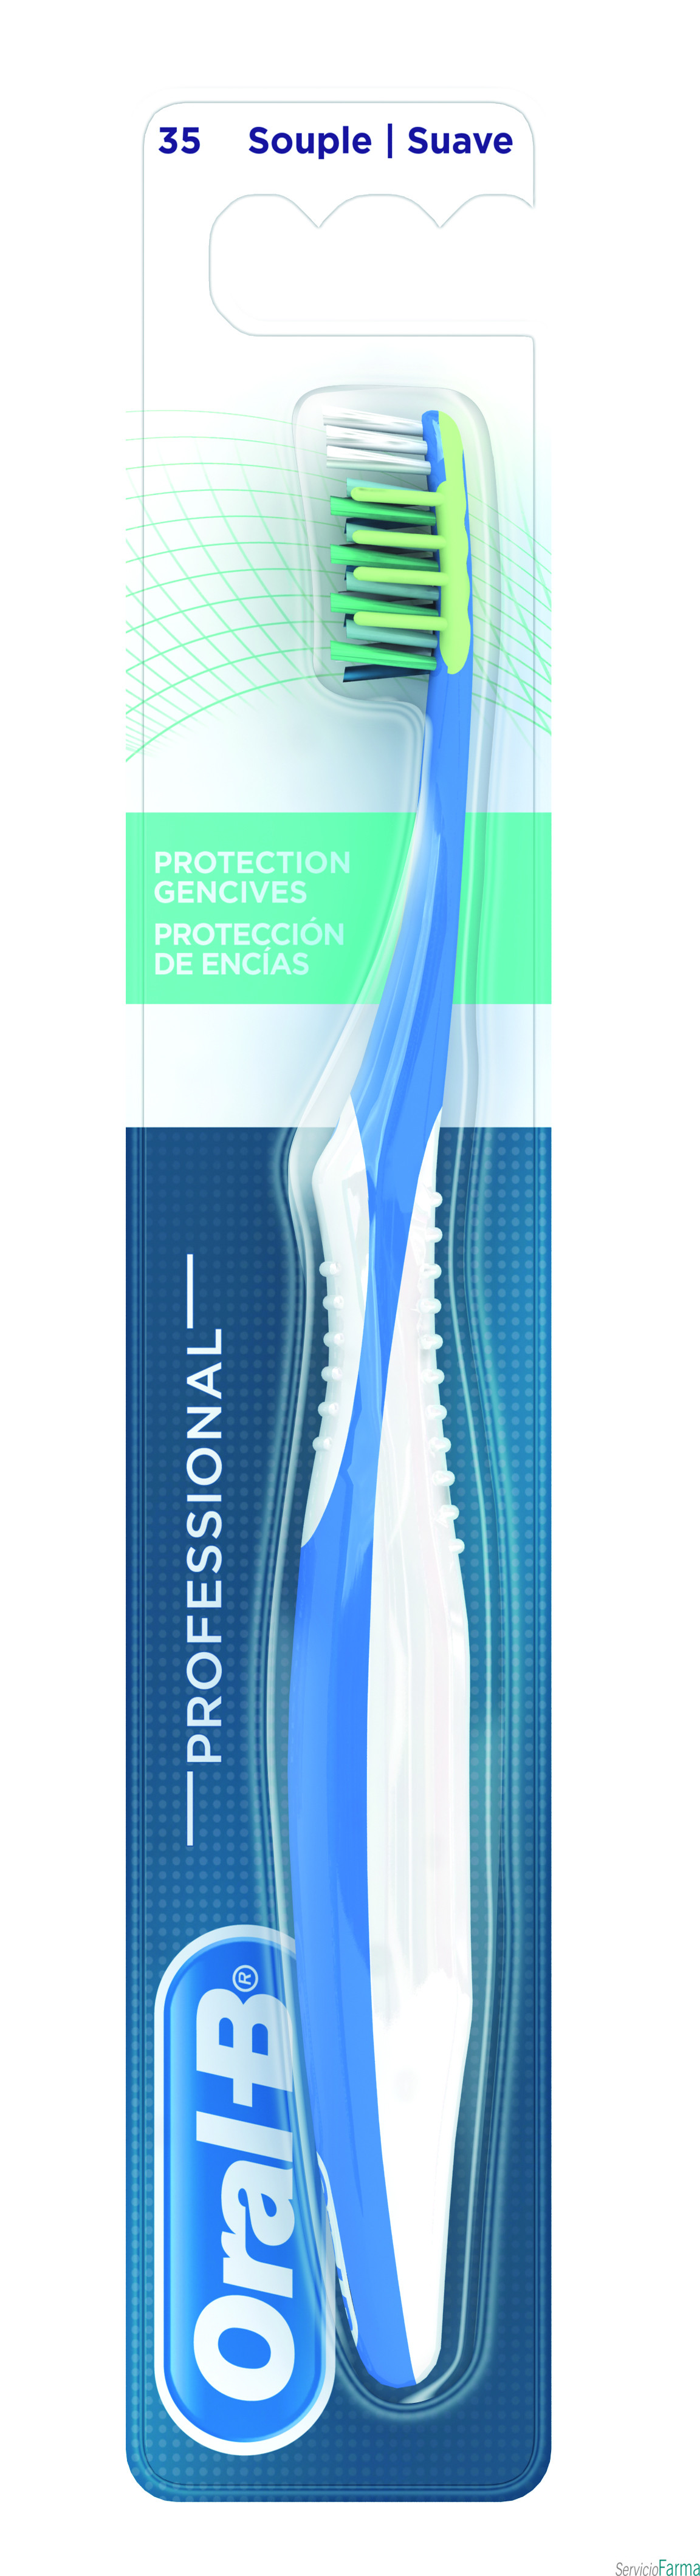 Oral B Professional escova protecção de gengivas Suave